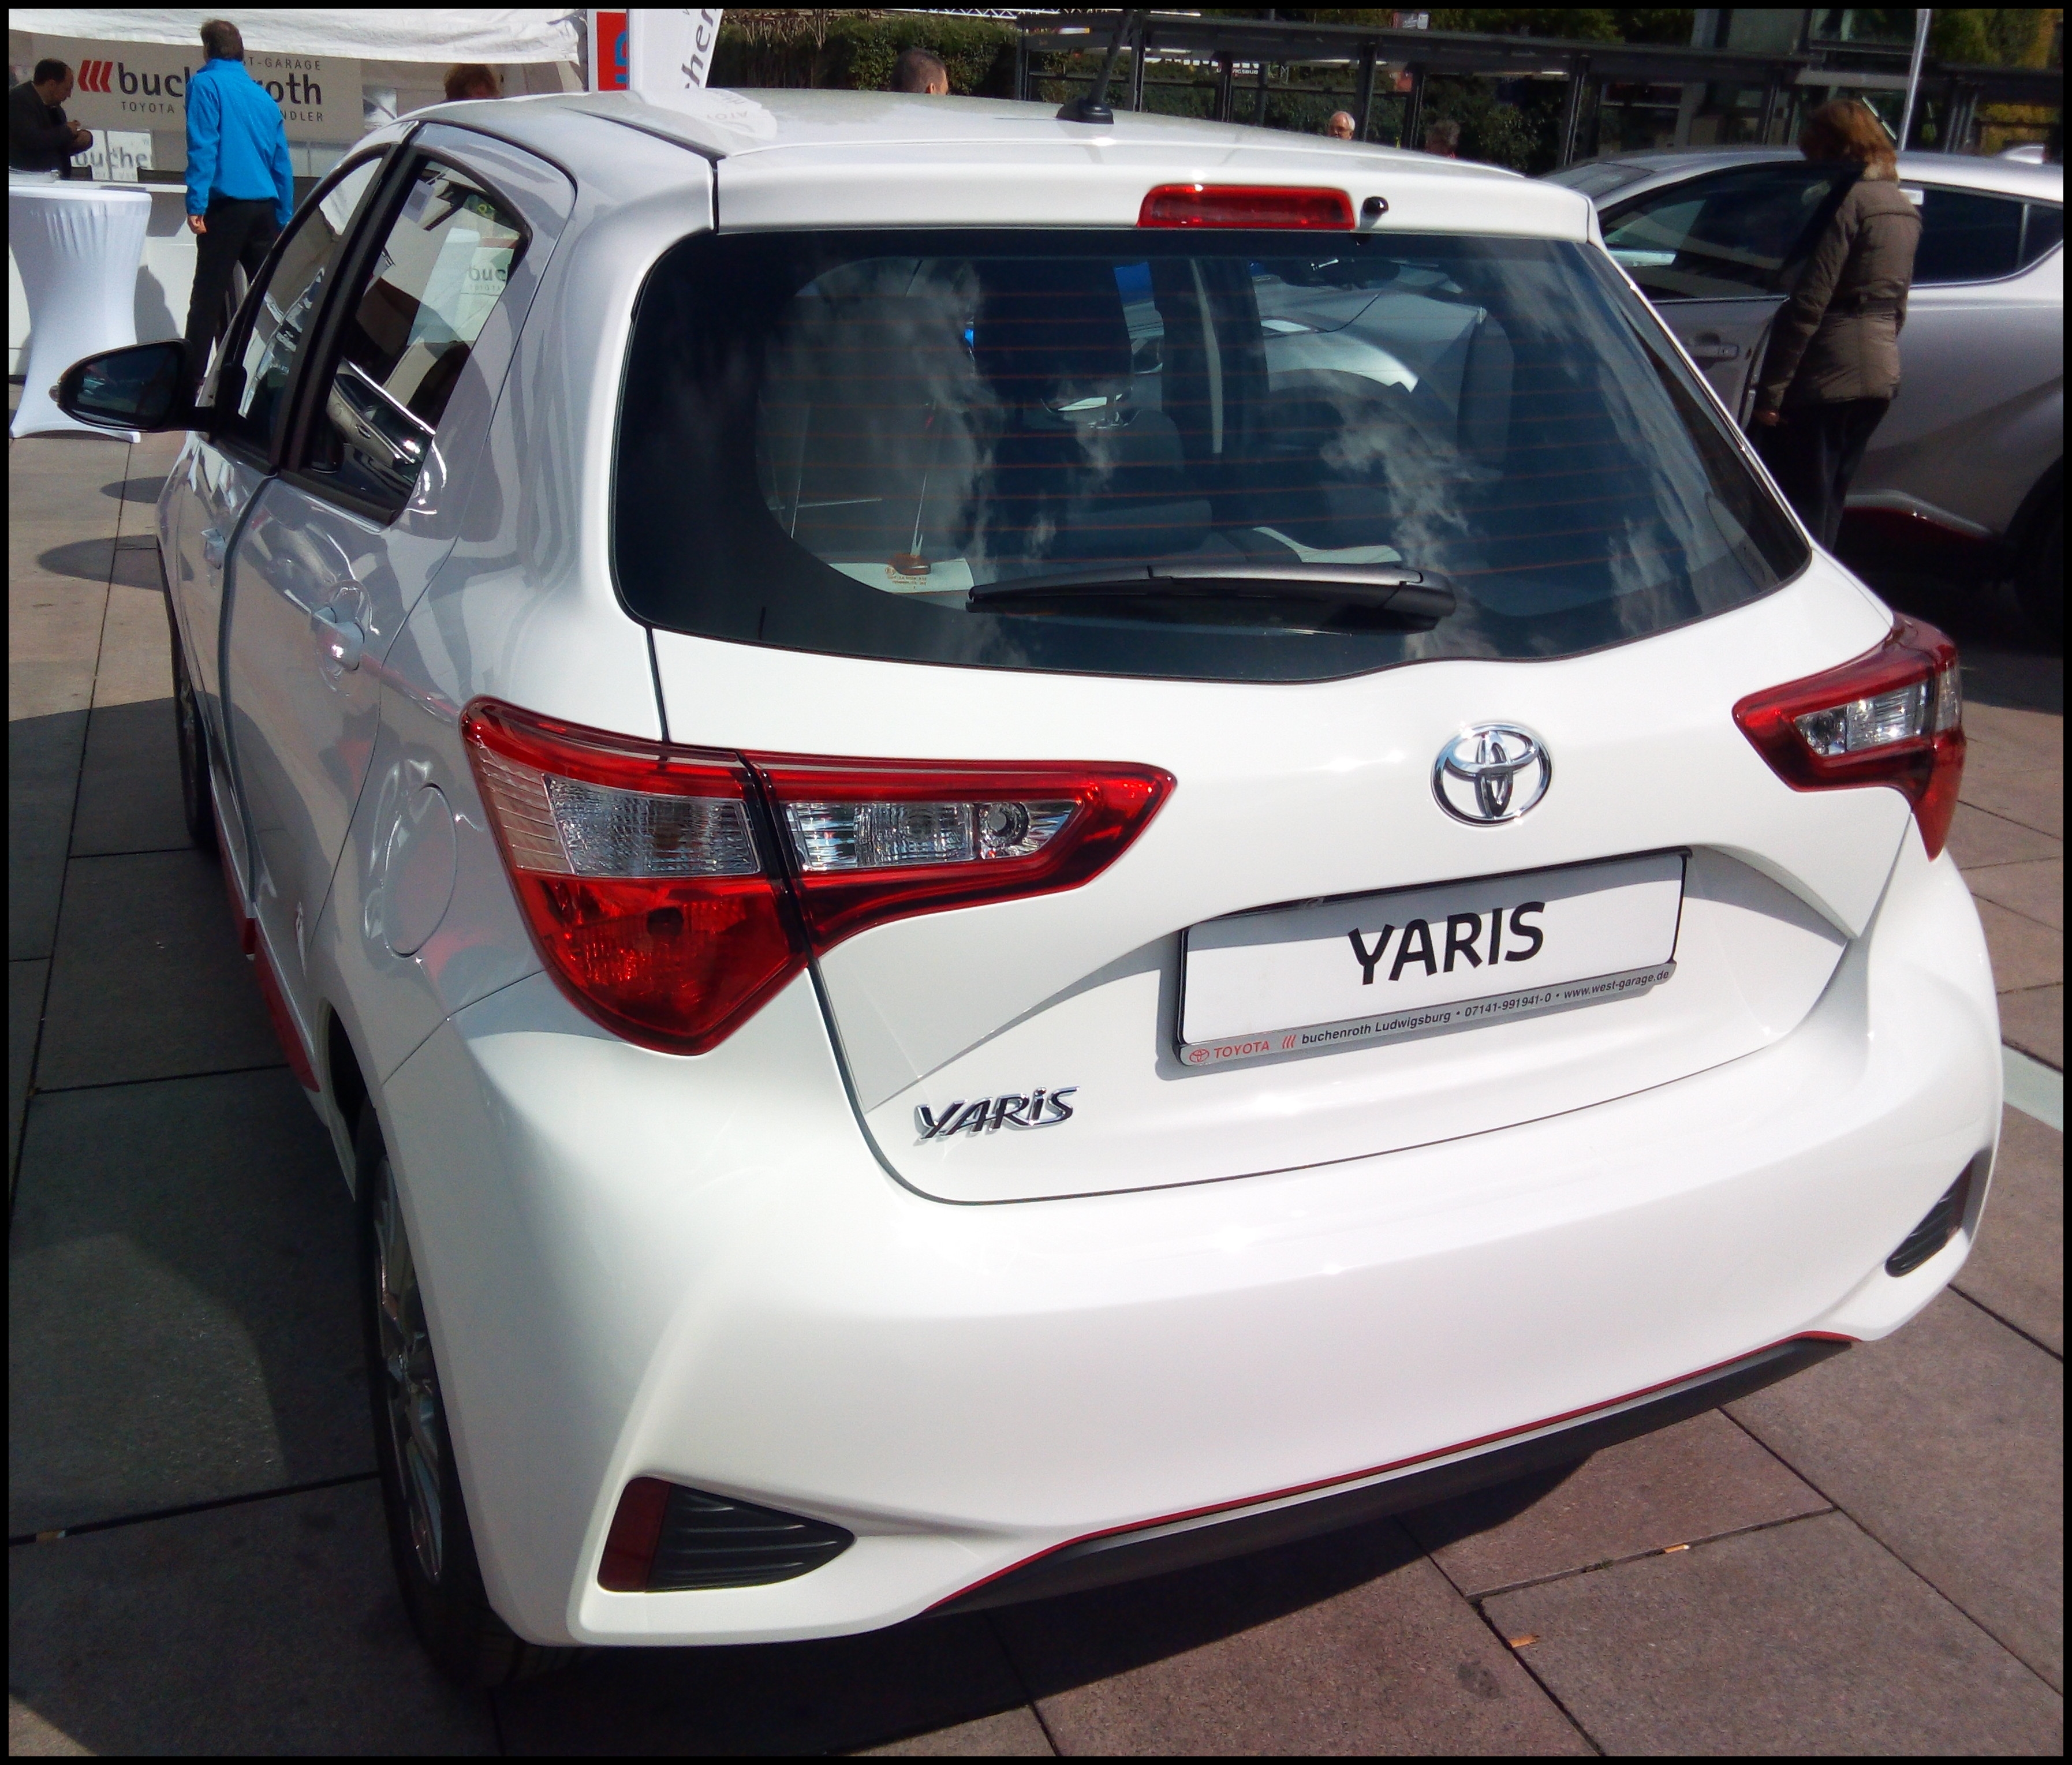 Toyota Yaris Wiki The Best Choice Car